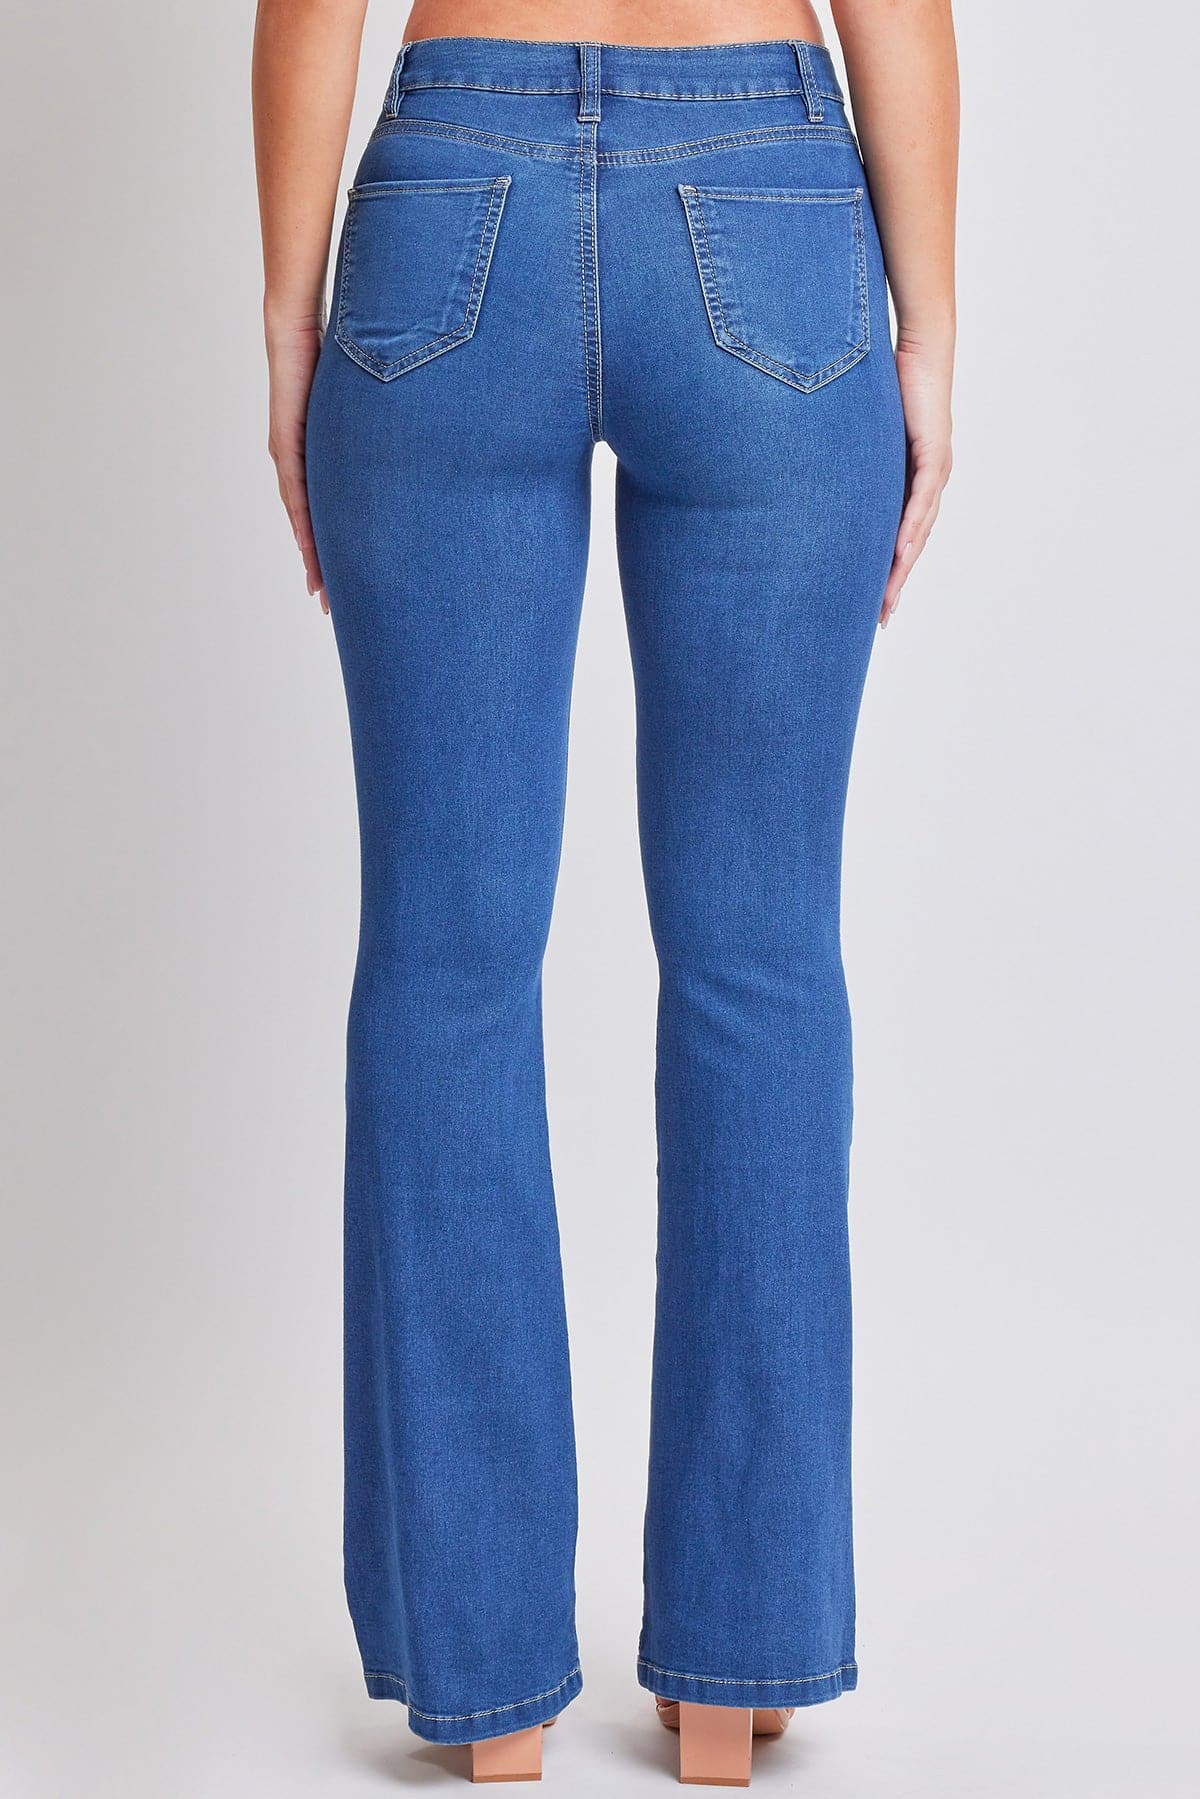 Women's Essential HyperDenim  Flare Jeans With Regular Inseam